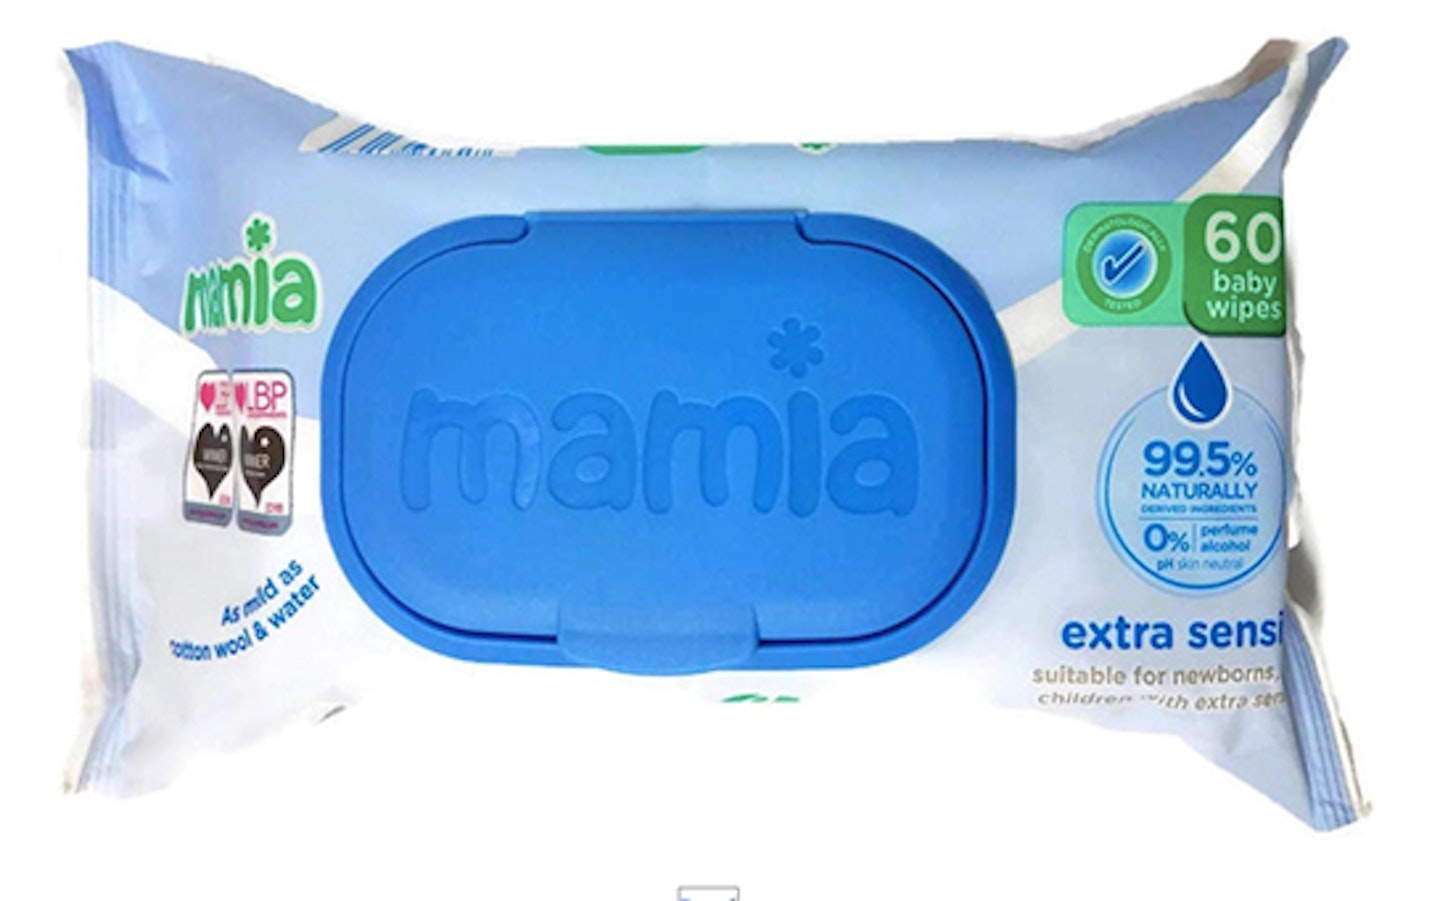 Aldi Mamia Extra Sensitive Baby Wipes